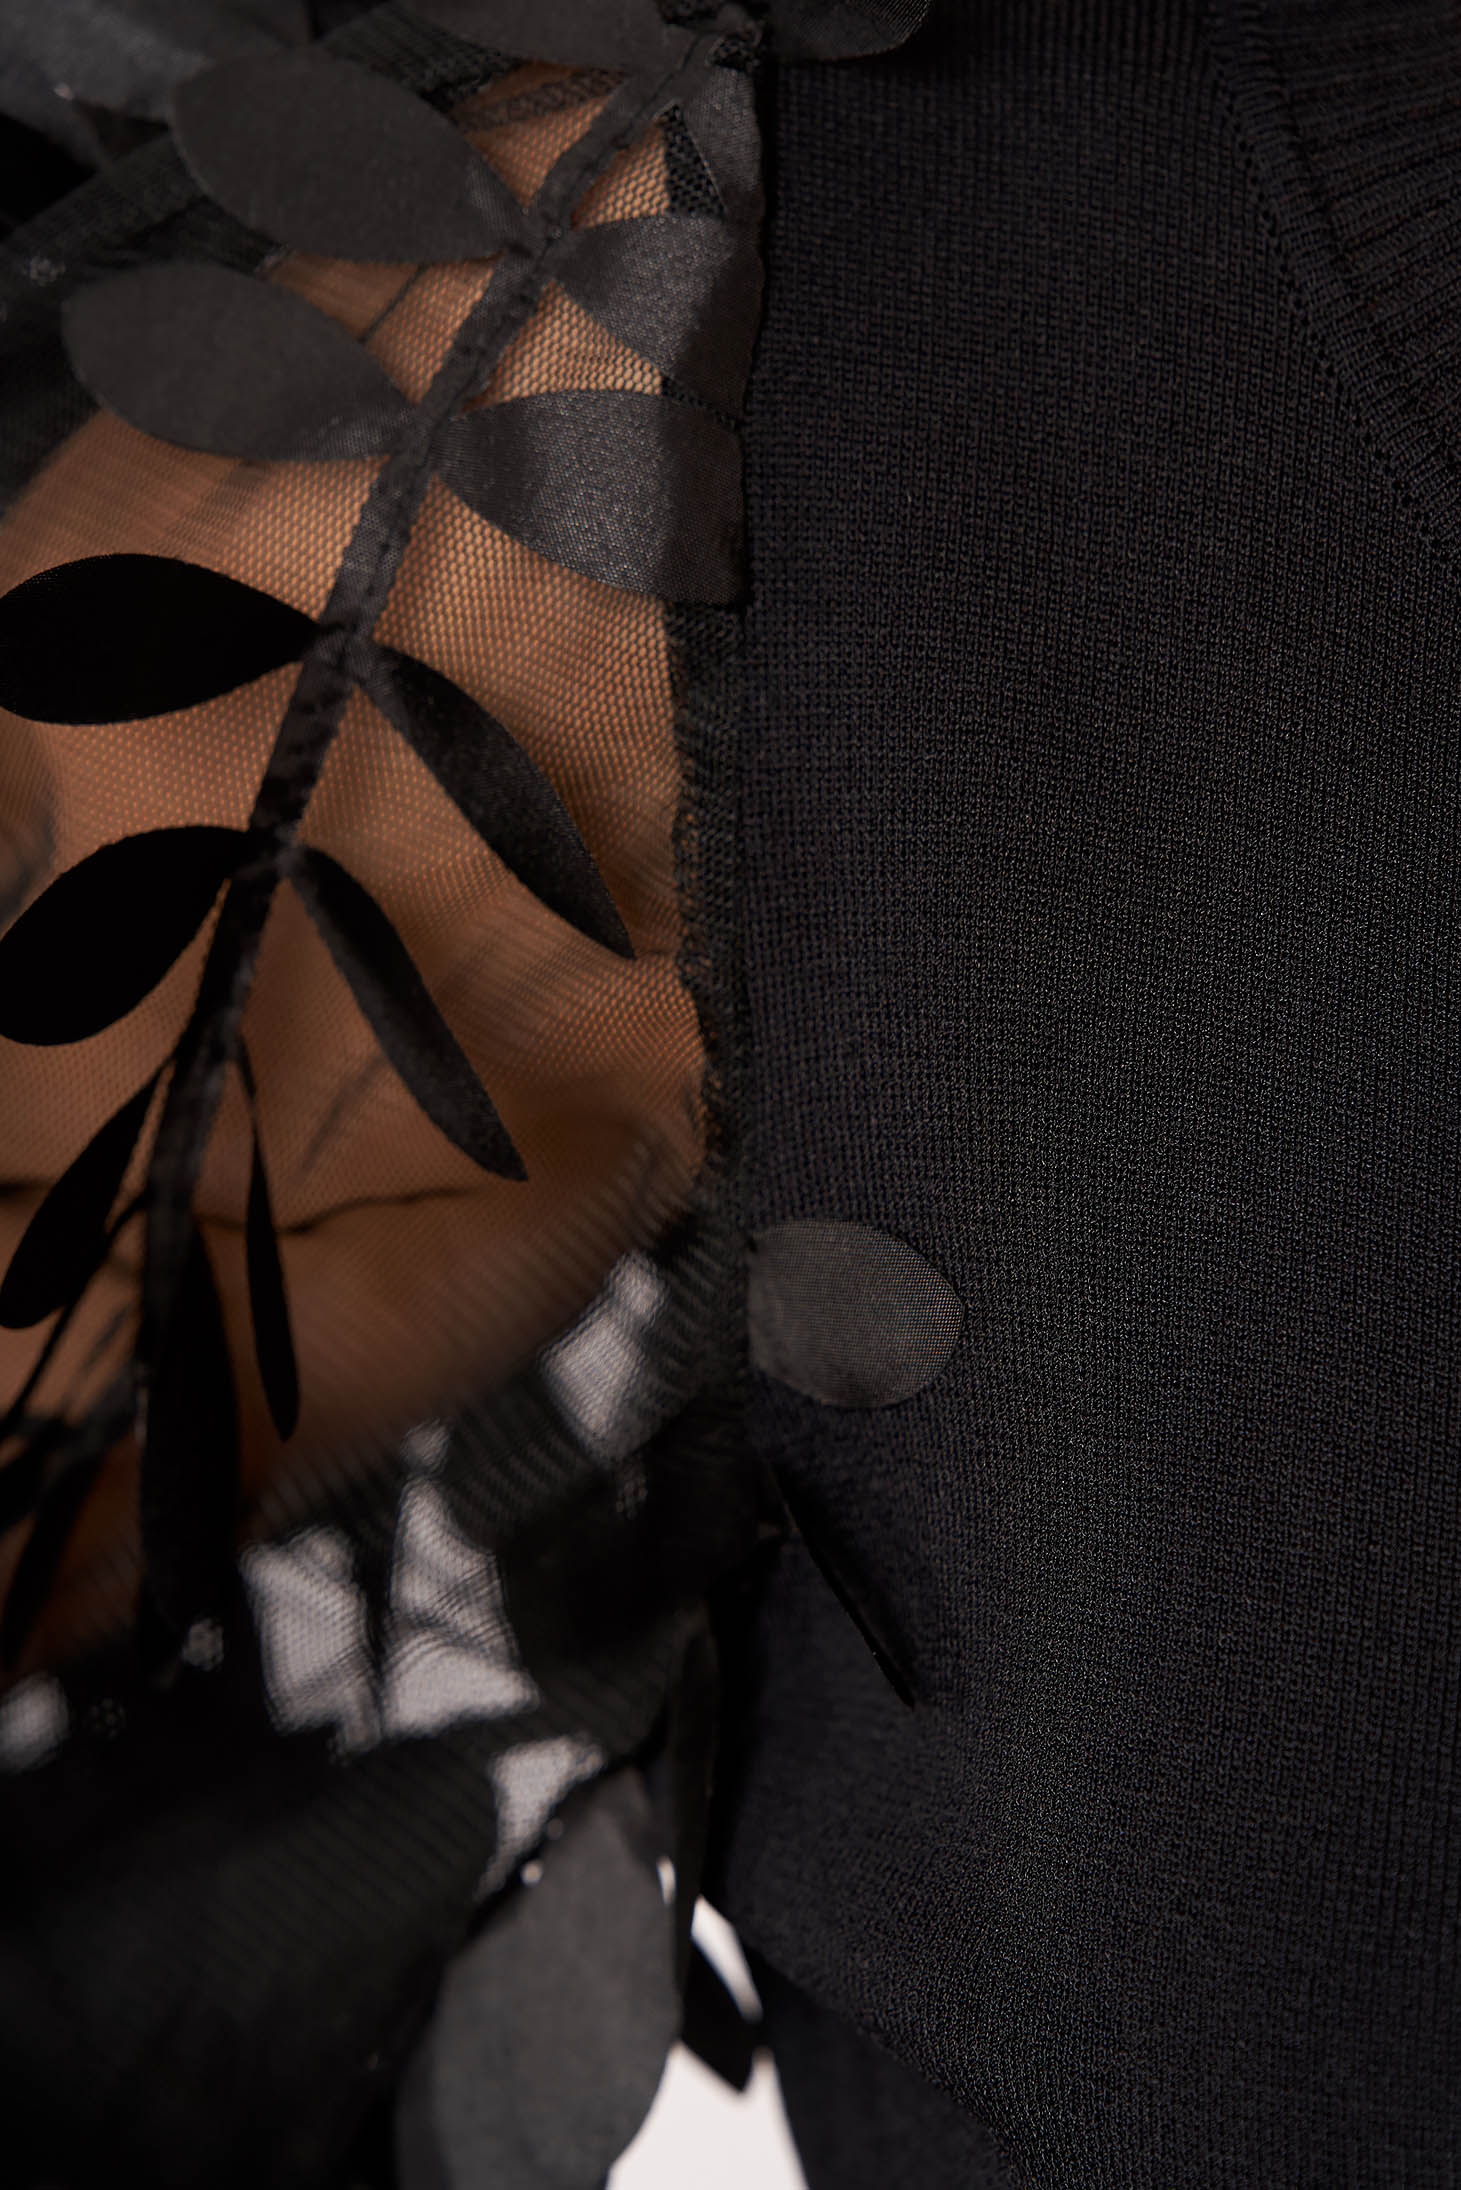 Bluza dama SunShine neagra eleganta tricotata scurta mulata cu aplicatii florale 3D cu decolteu la baza gatului si maneci lungi 4 - StarShinerS.ro